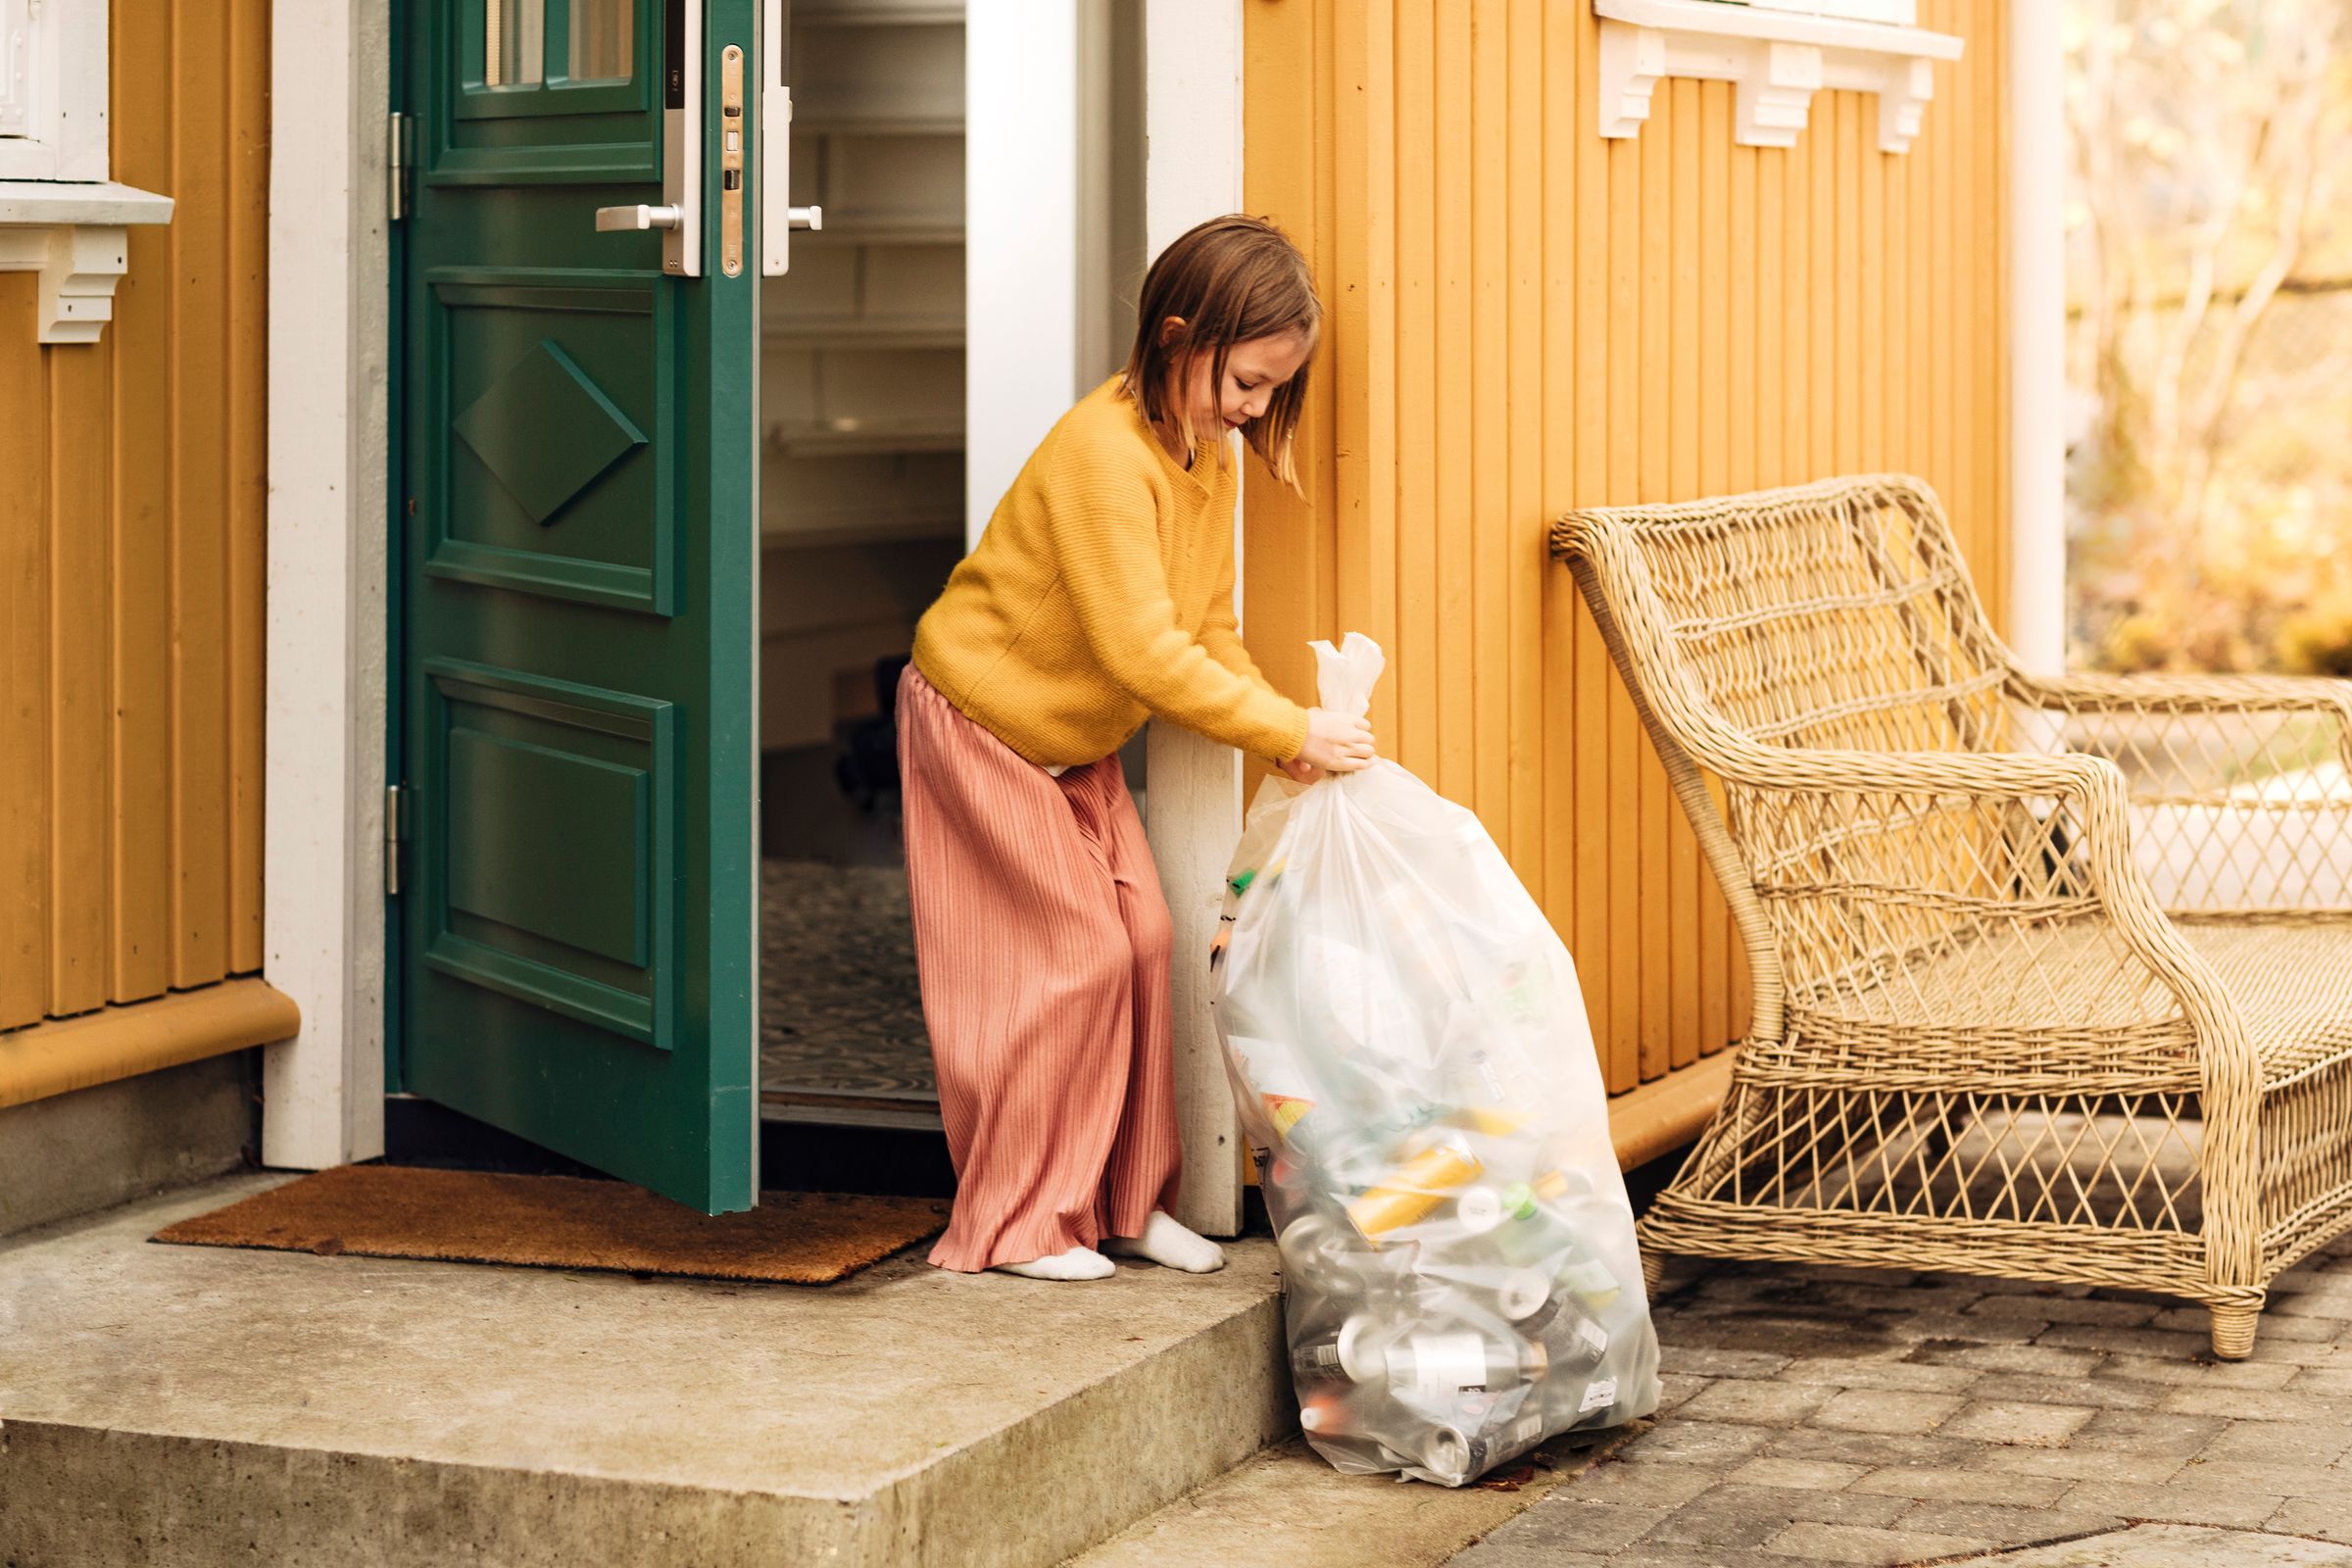 Oda erleichtert dir die Pfandrückgabe. Auf dem Bild sieht man ein kleines Mädchen einen riesigen Müllsack mit Pfandflaschen schleppen. Das ist mit Oda nun vorbei.